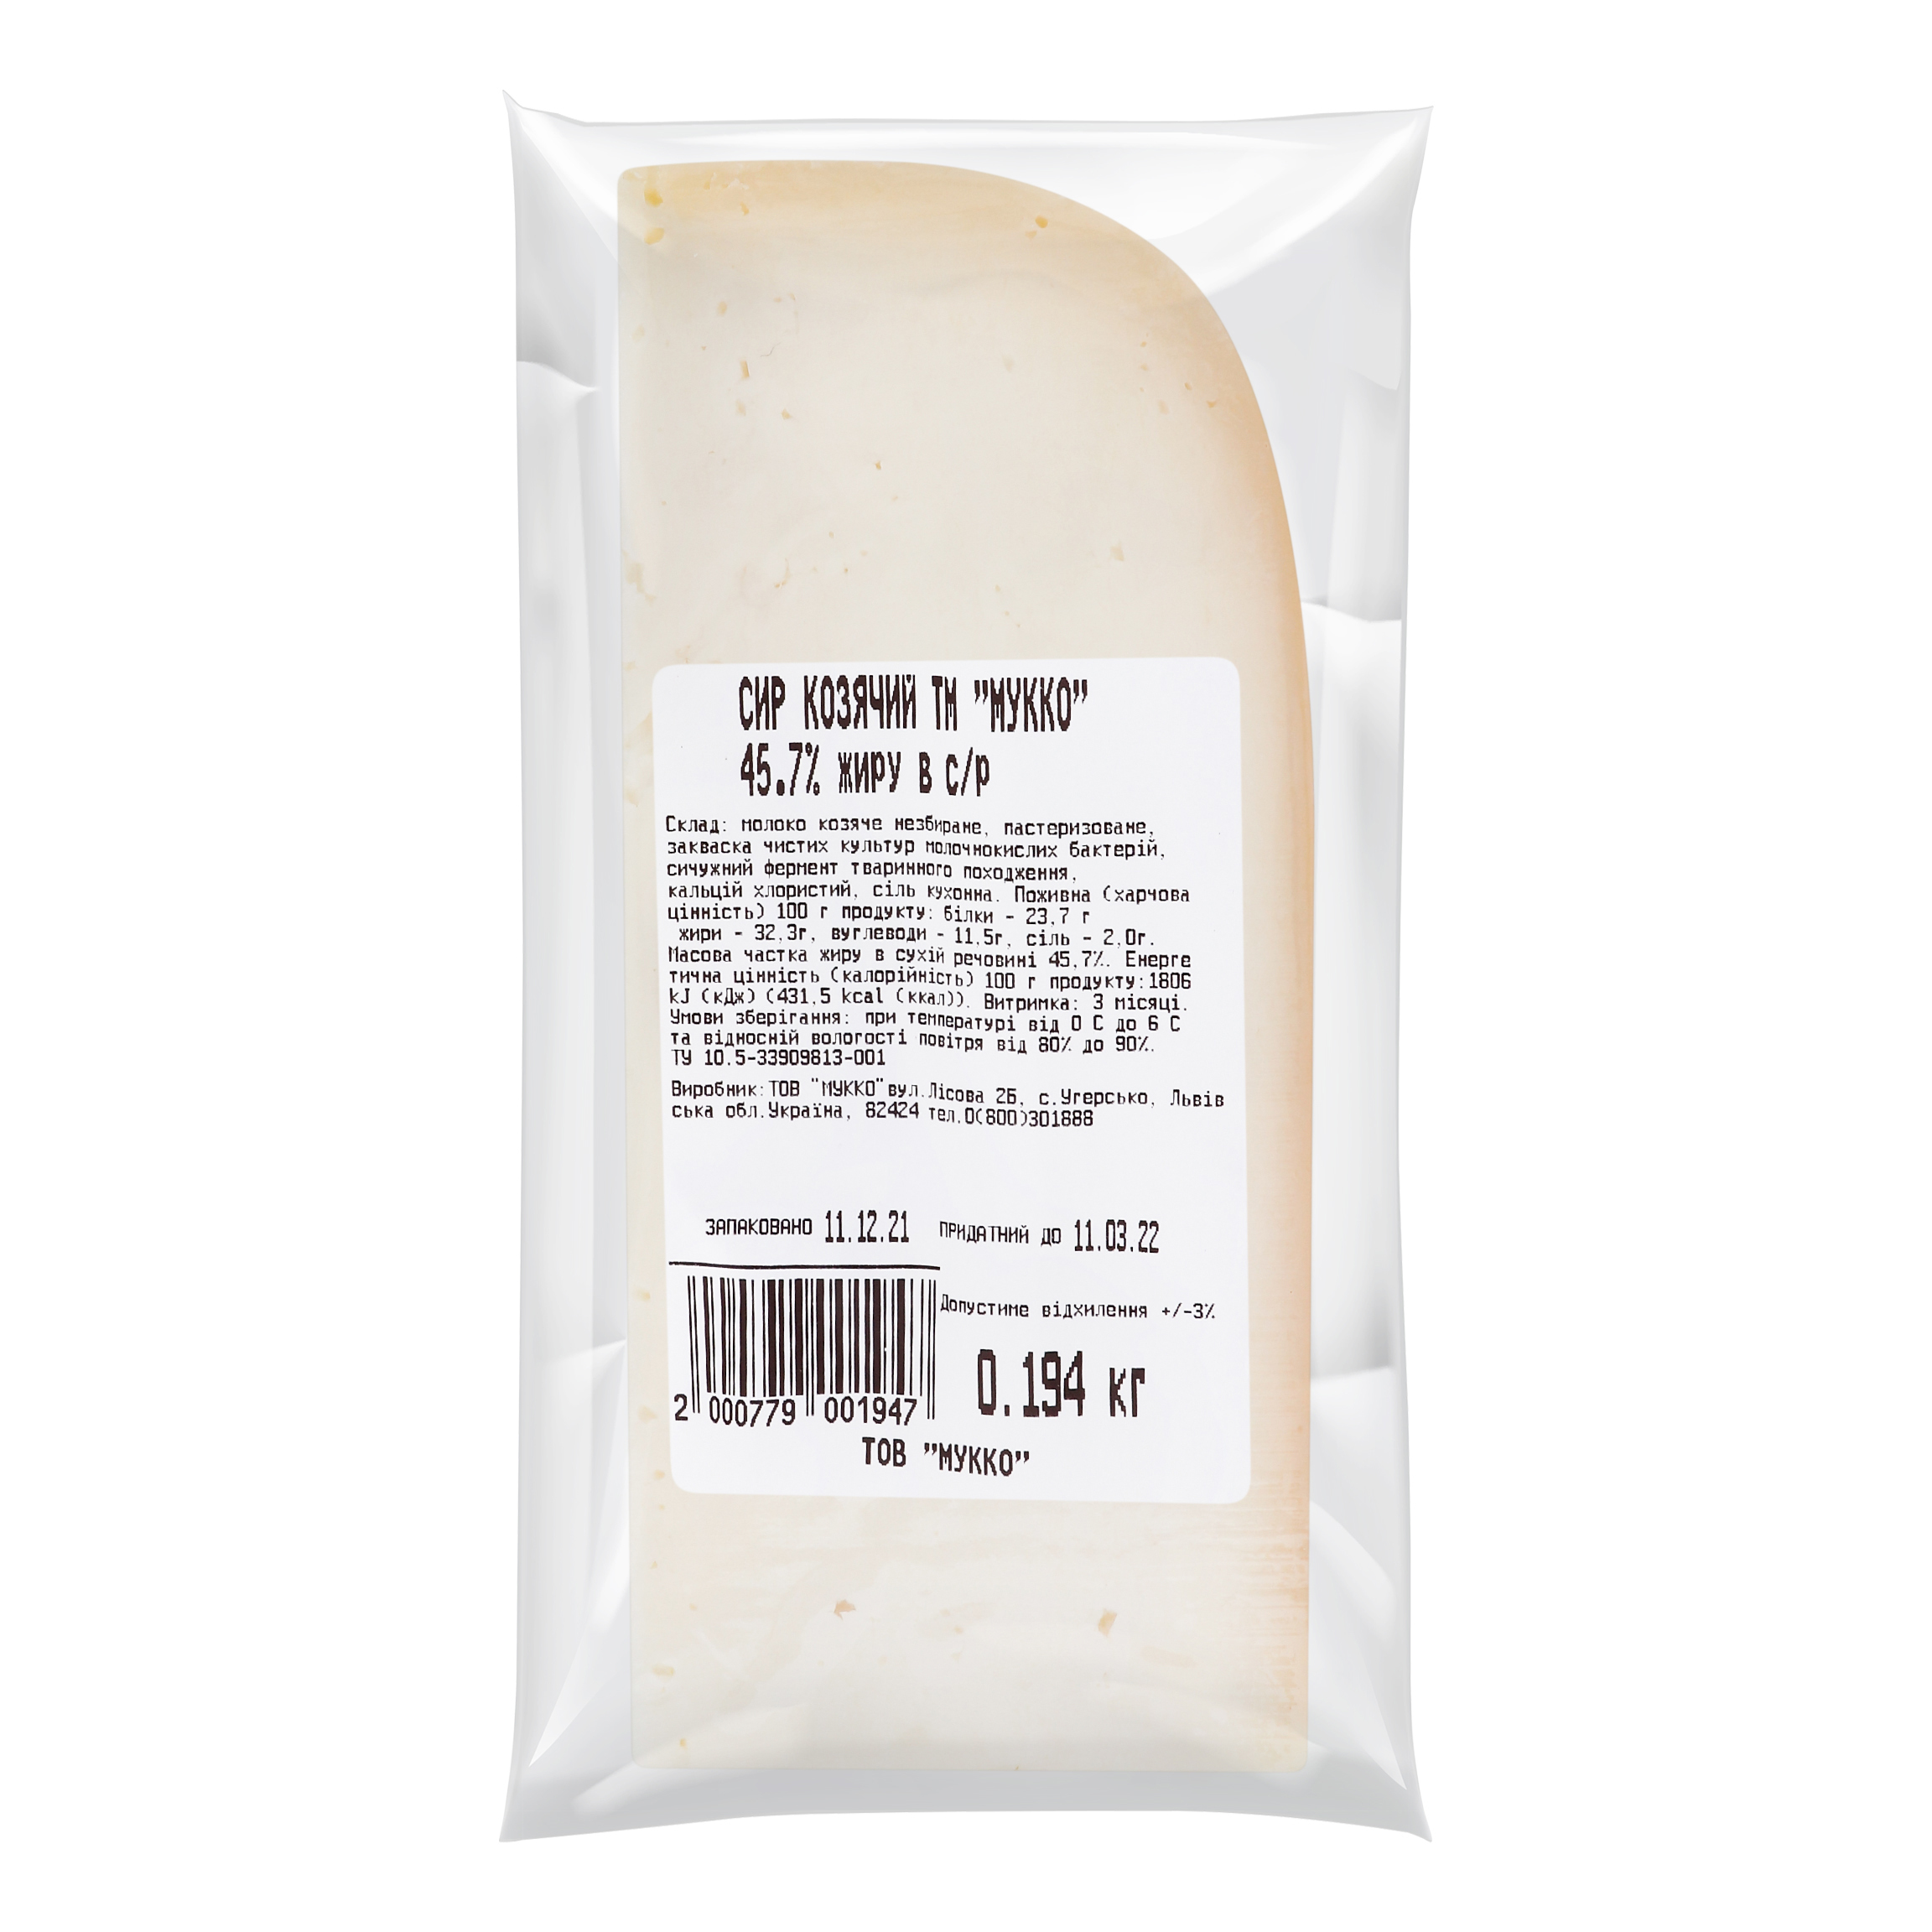 Mukko goat cheese 45.7% 2